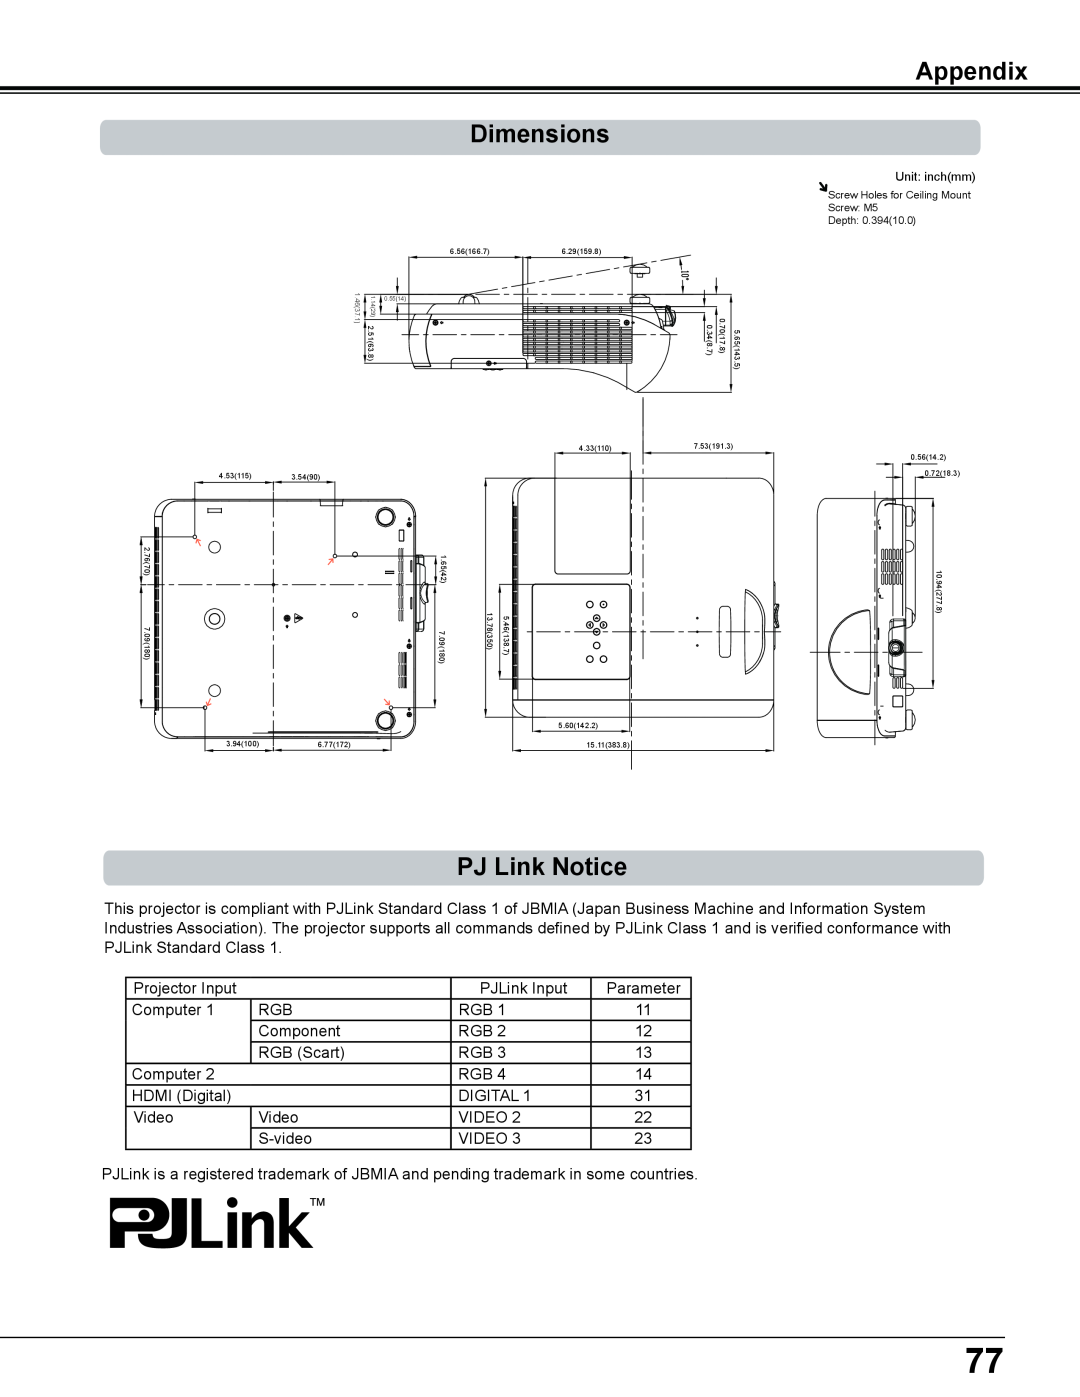 Sanyo PLC-WL2503A owner manual Appendix Dimensions, PJ Link Notice, Unit inchmm 